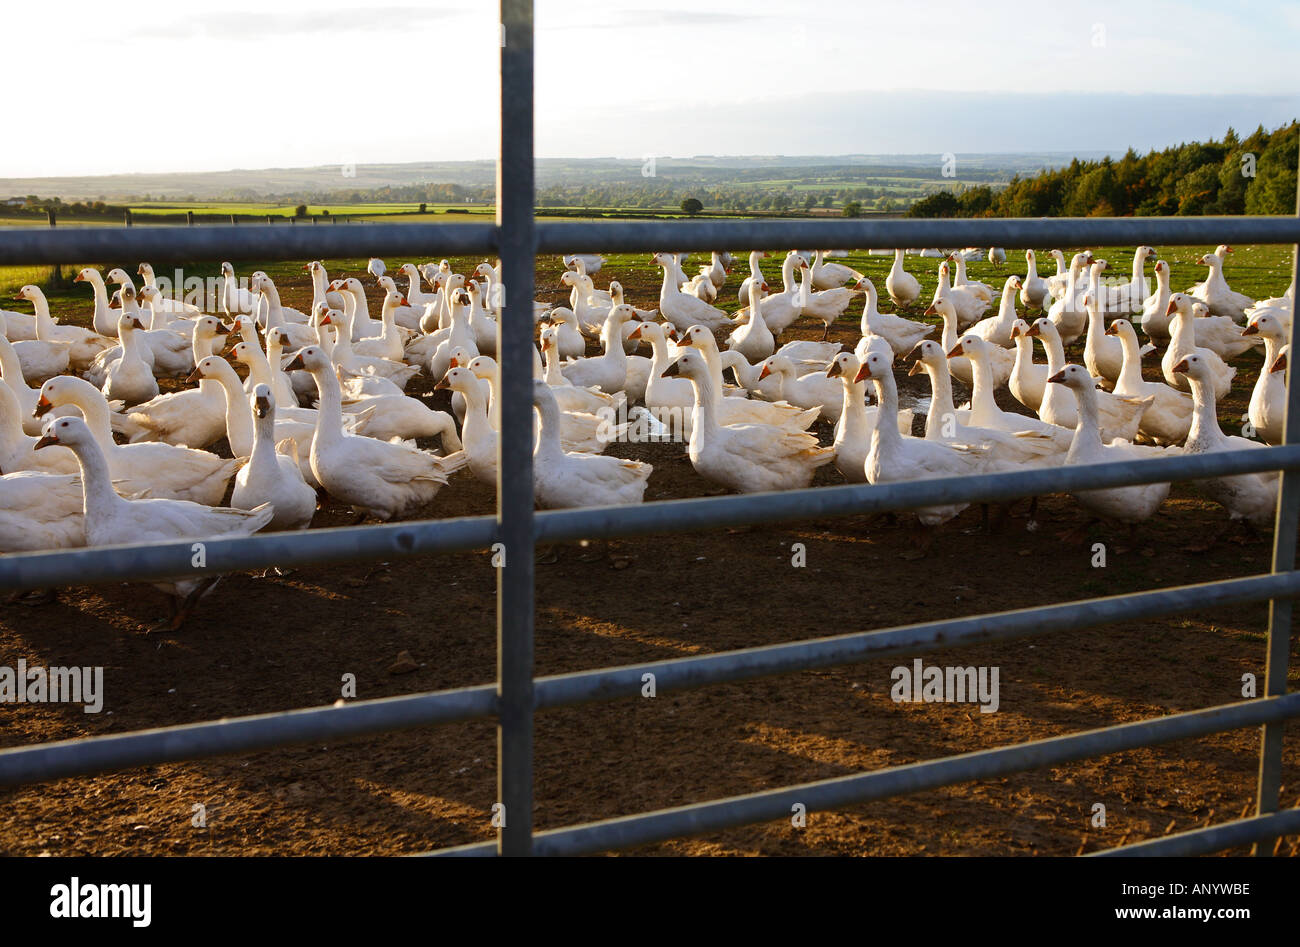 Gänse auf dem Bauernhof Oxfordshire Großbritannien freie Auswahl Vögel gefährdet sein könnte, wenn die Vogelgrippe Vogelgrippe-Virus-Grippe breitet sich Stockfoto